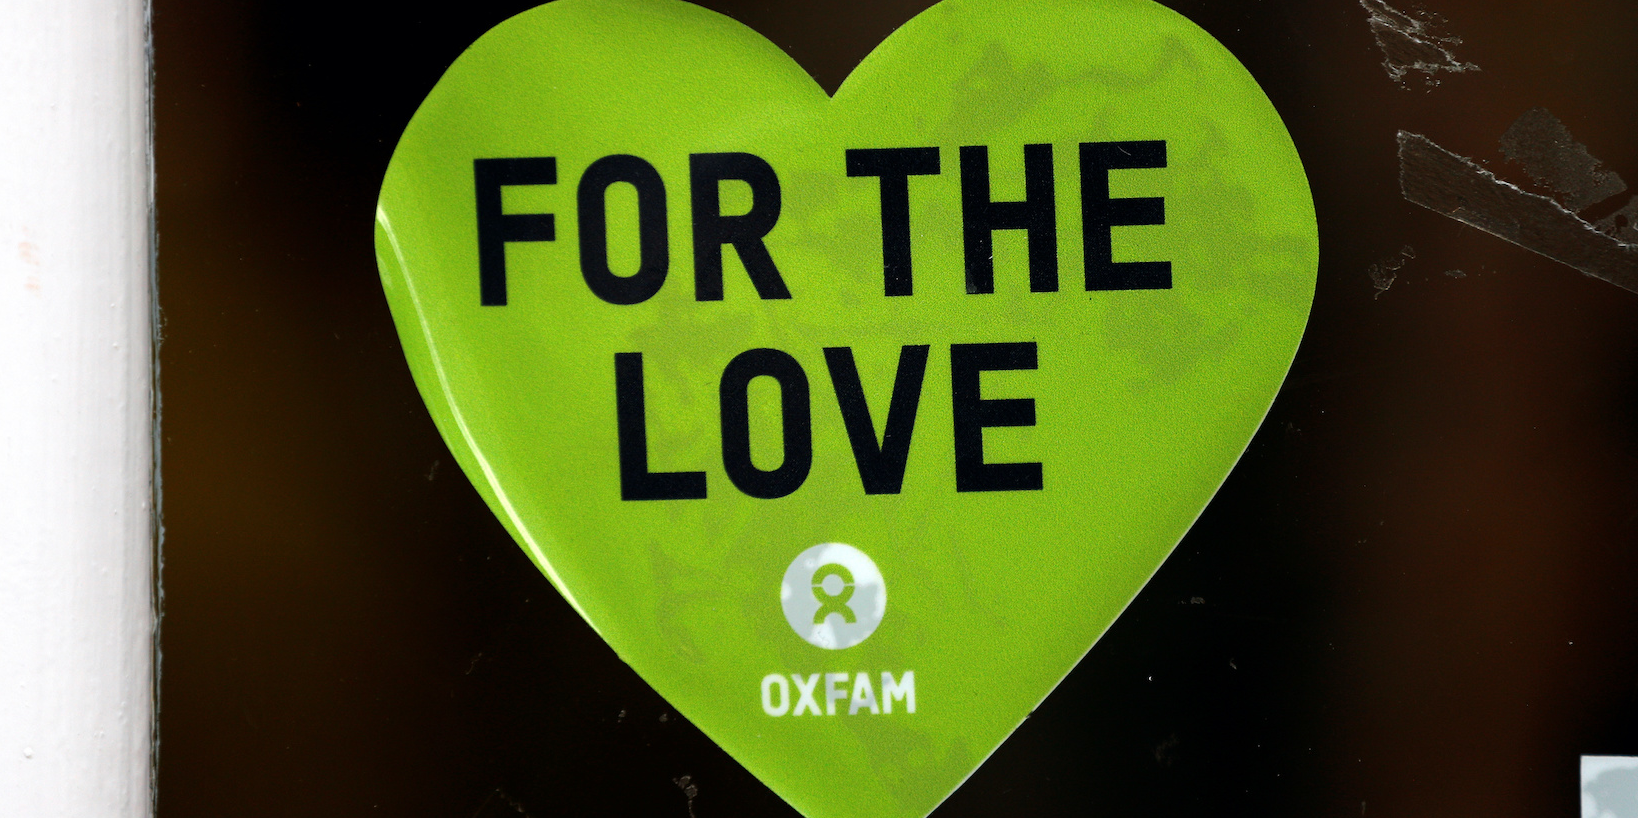 Rapport Oxfam : une étude biaisée au service de la démagogie